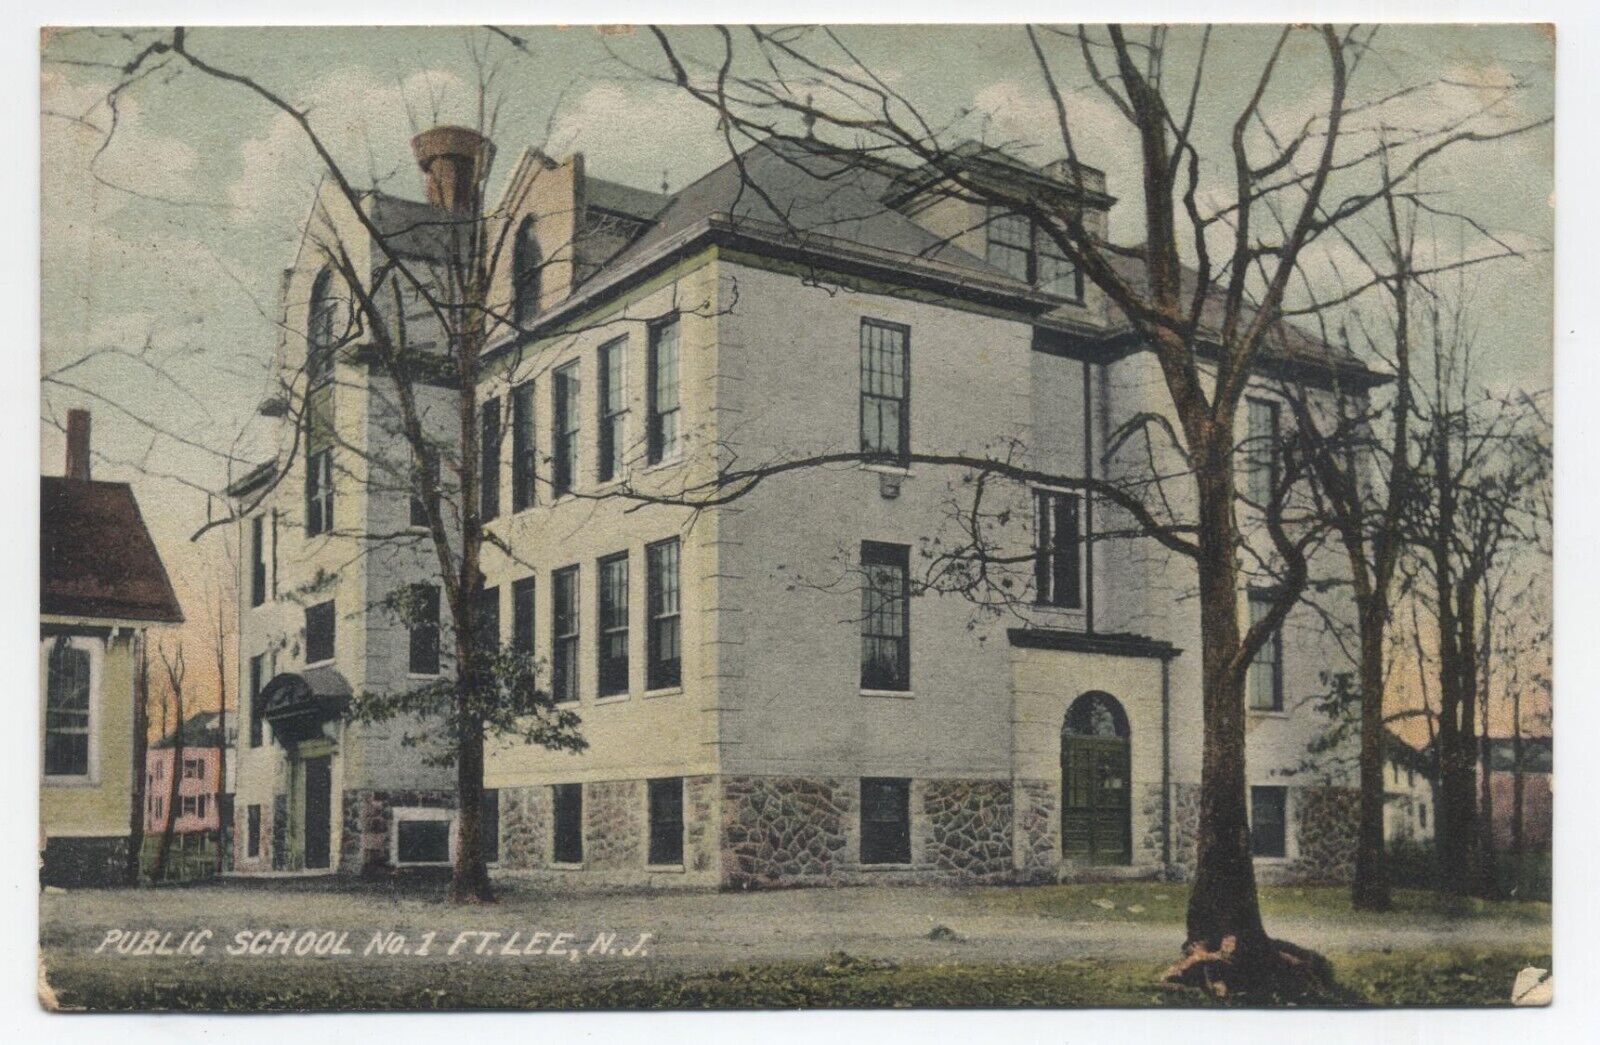 NJ ~ Public School No. 1 FORT LEE New Jersey 1909 Bergen County Postcard